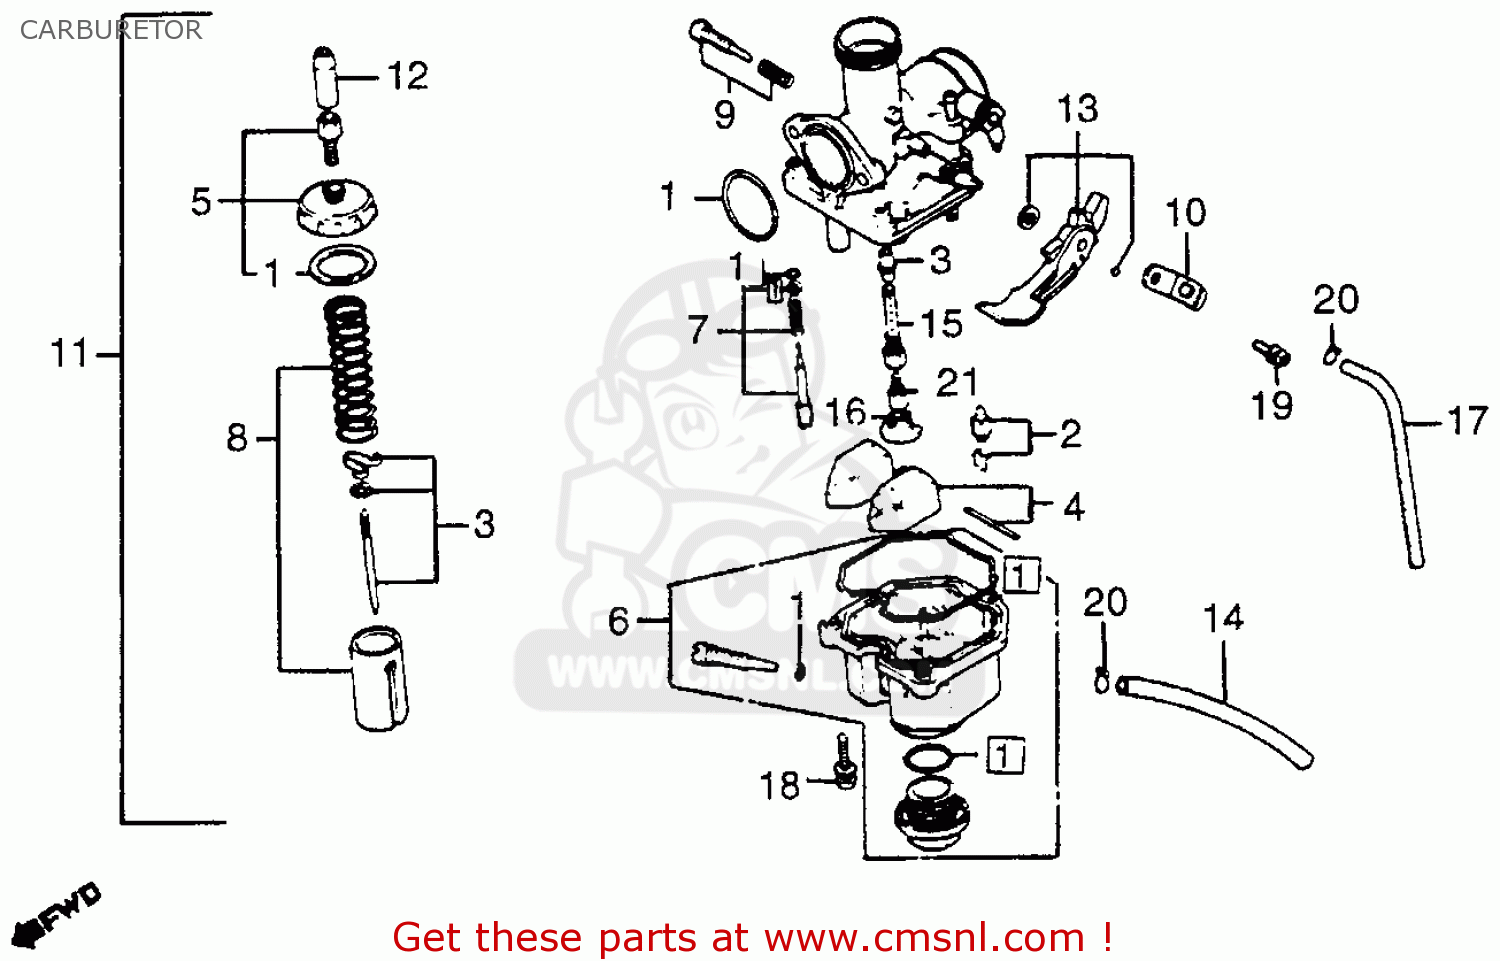 Honda crf50 carburetor schematics #3